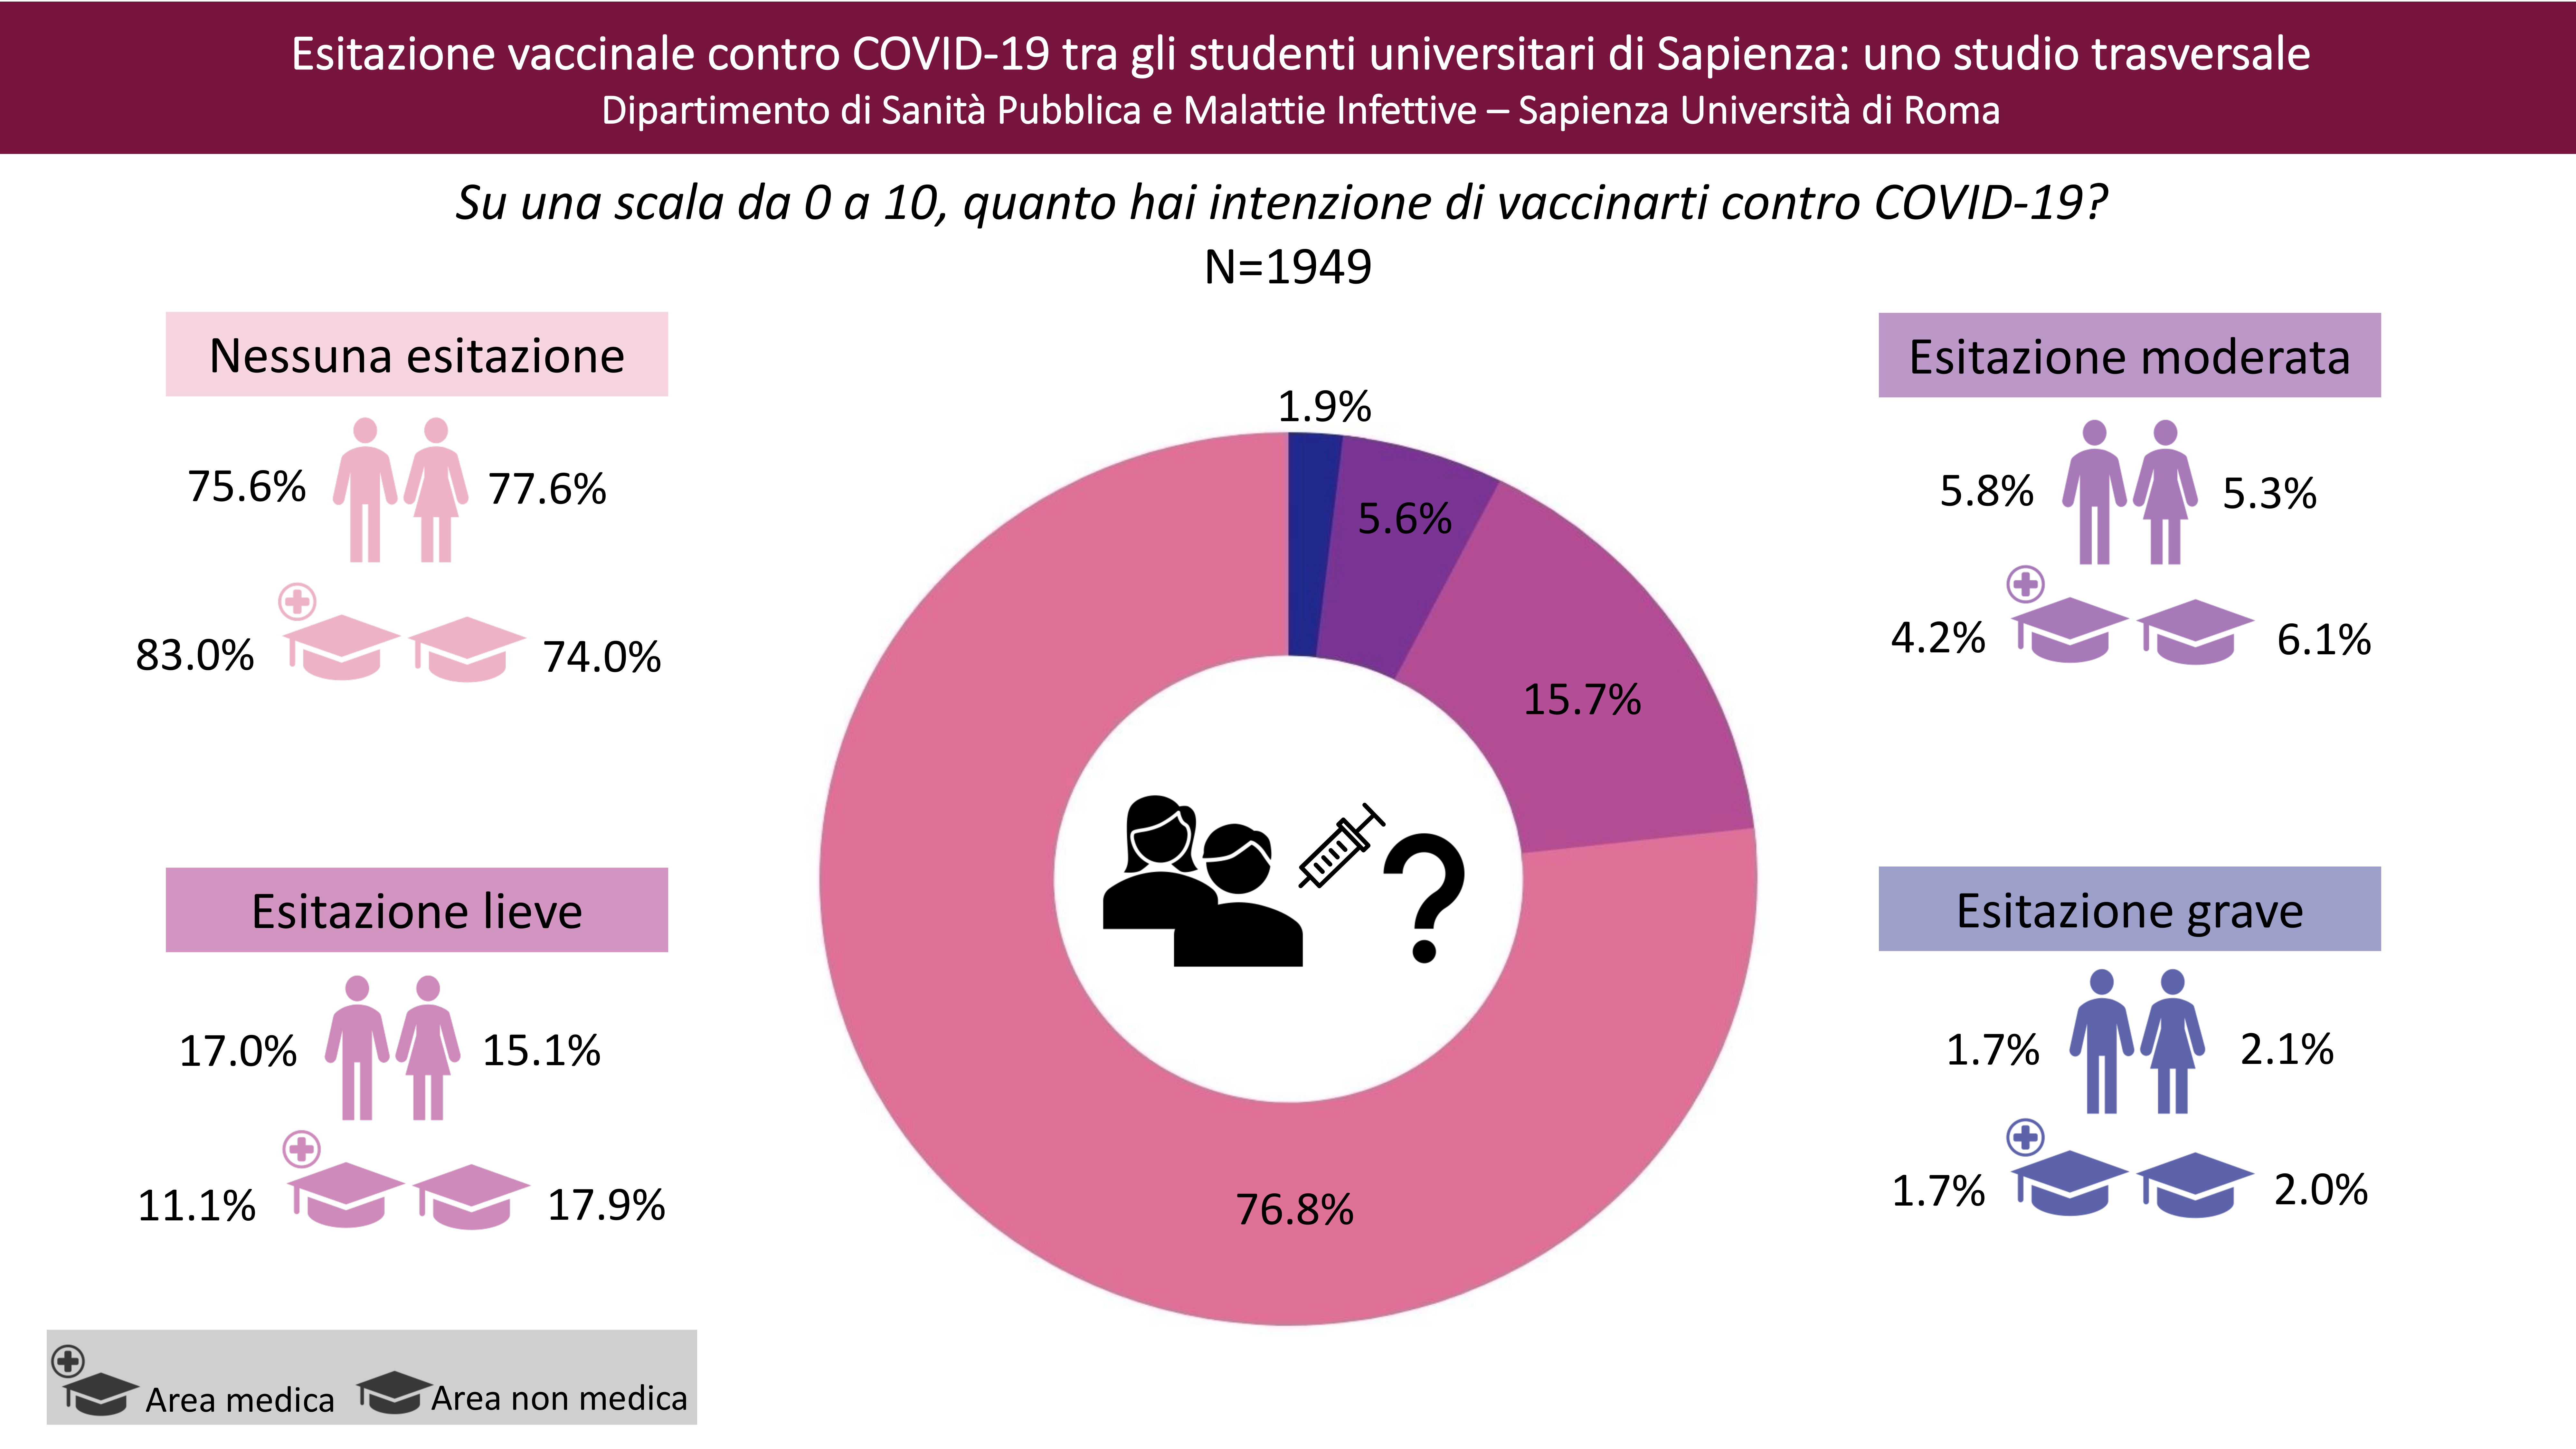 Circa il 75% degli studenti intervistati non riferisce esitazione nei confronti della vaccinazione contro COVID-19. Alcuni fattori come il sesso e studiare in una facoltà di area medica sembrano essere determinanti dell’esitazione vaccinale.